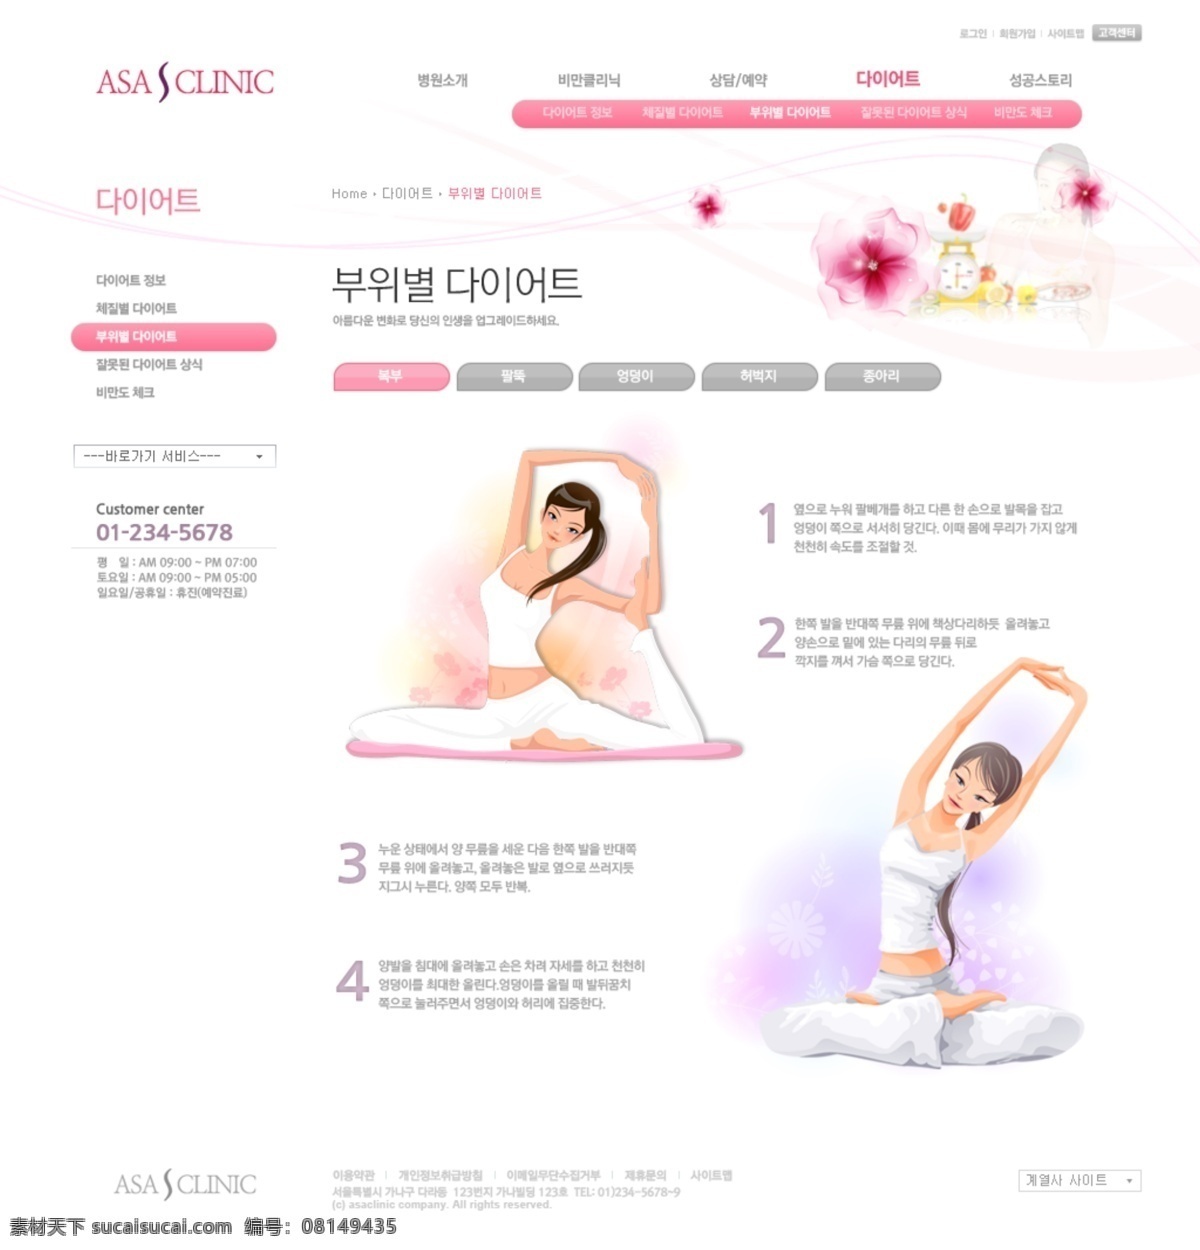 粉红色 健身 梦幻 女性 网页模板 网页设计 星光 源文件 减肥 美容 主题 女性生活 类 韩文模板 网页素材